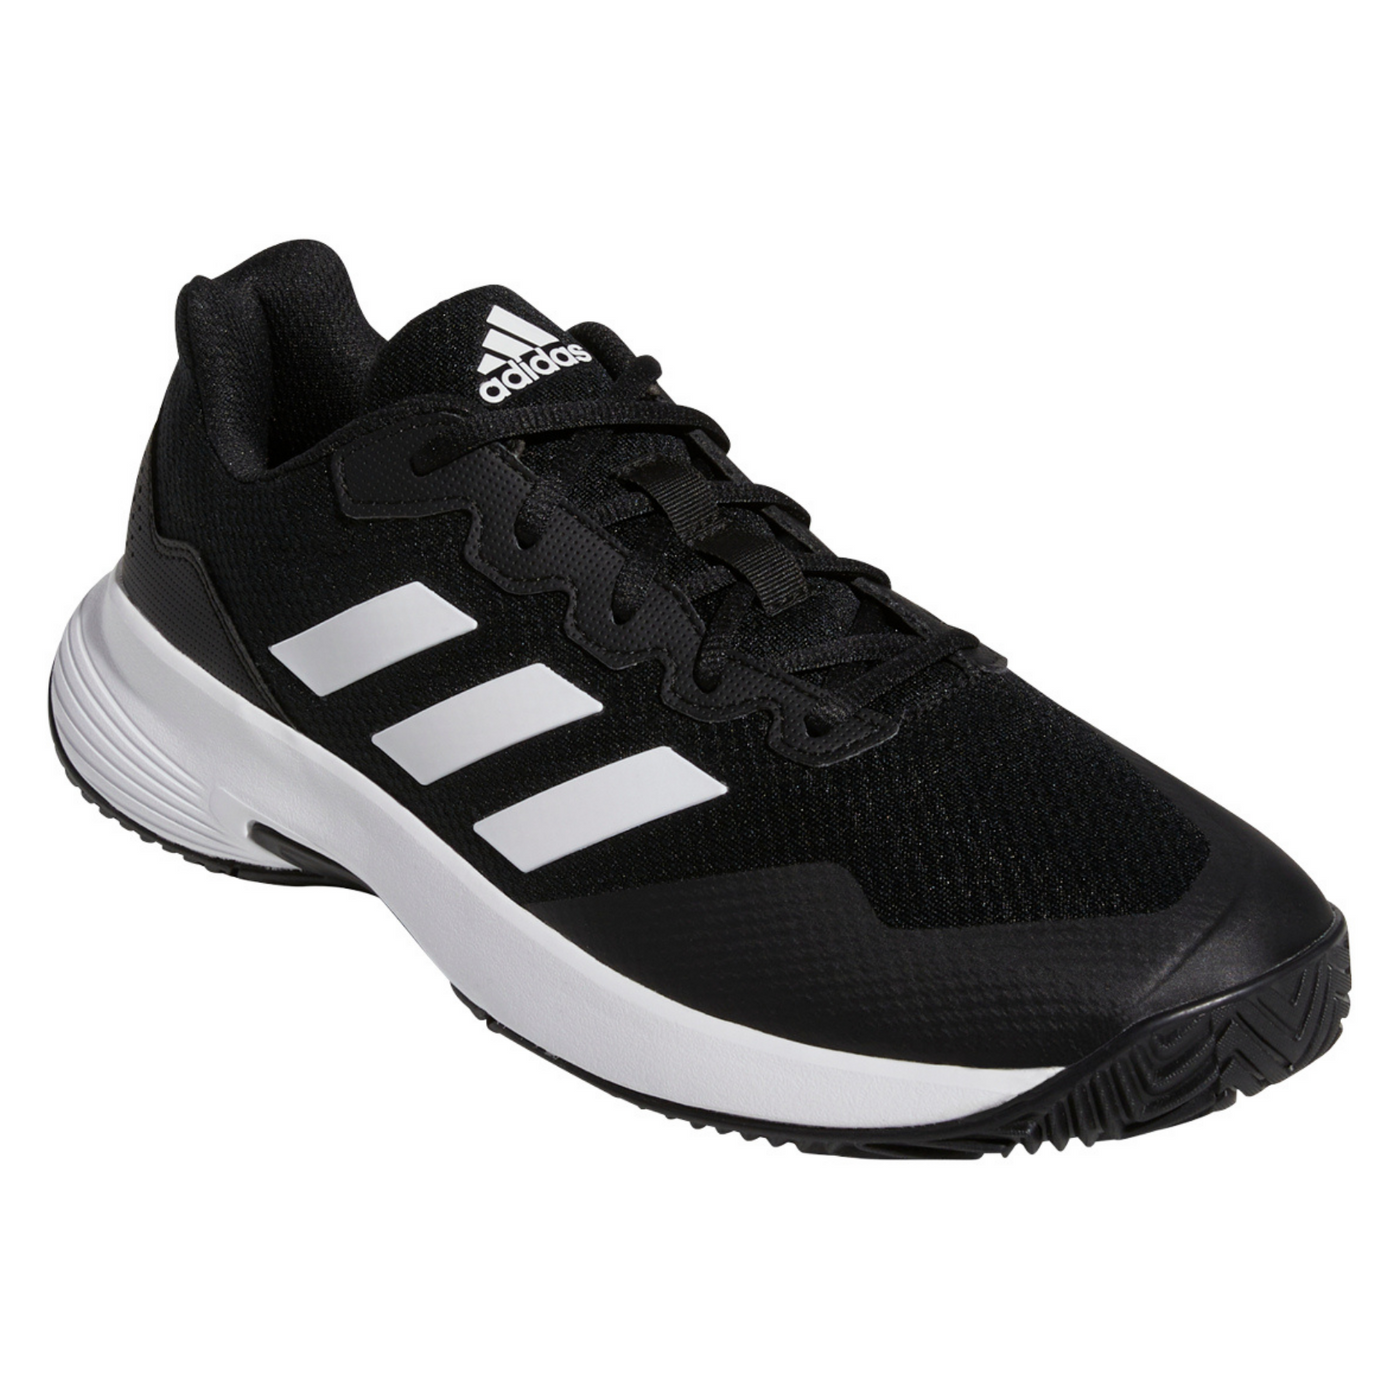 Adidas Game Court 2 Men Tennis Shoes - Core Black/Cloud White/Core Black